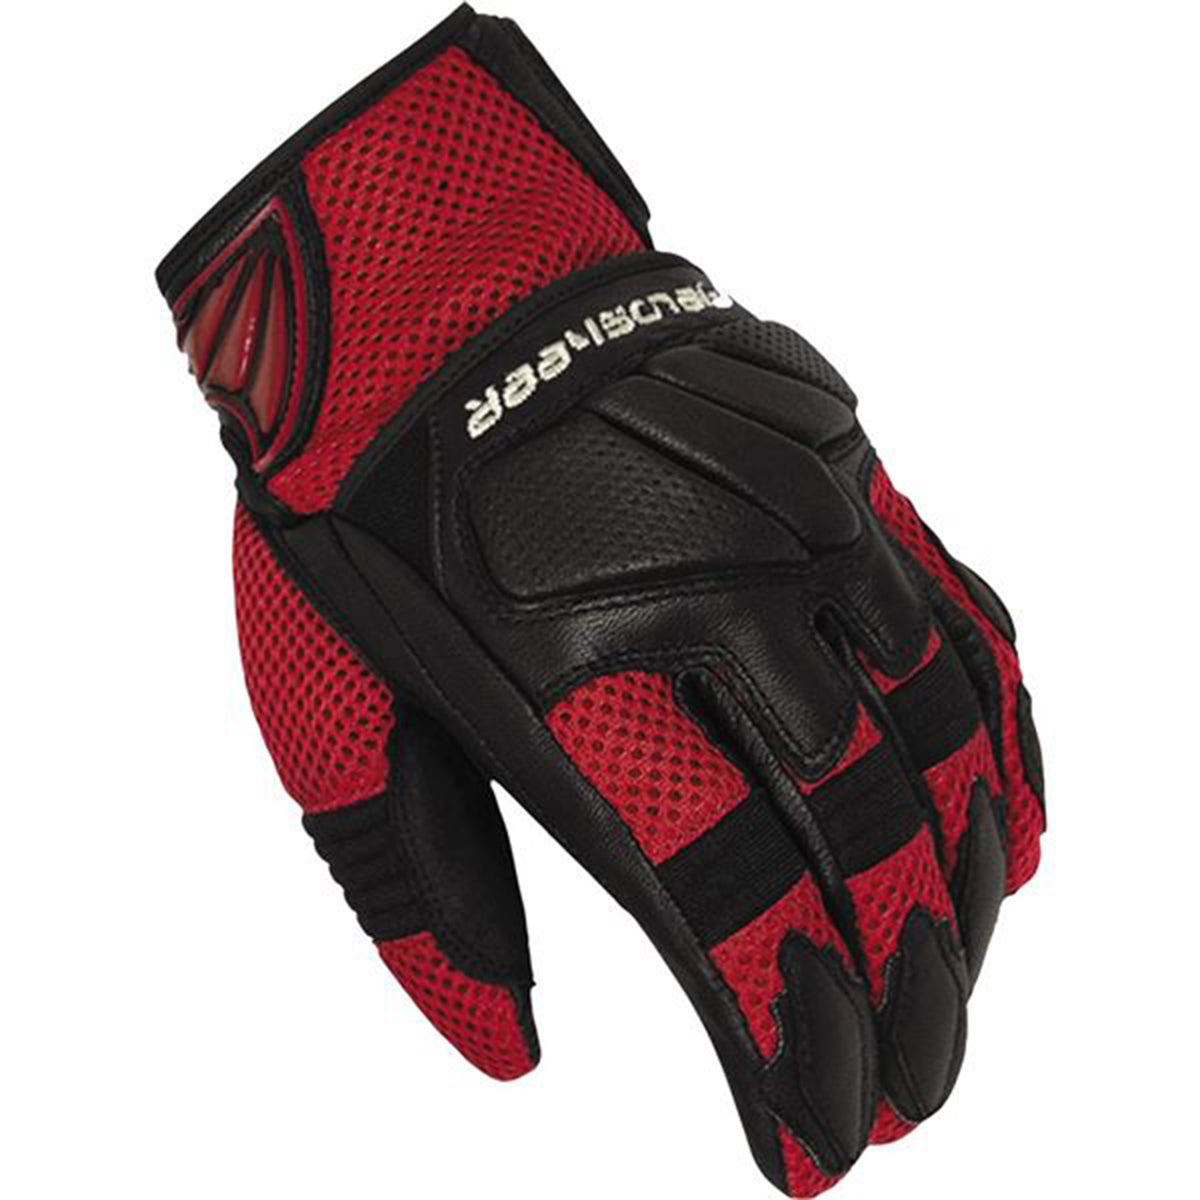 Fieldsheer Sonic Air 2.0 Men's Street Gloves-6299